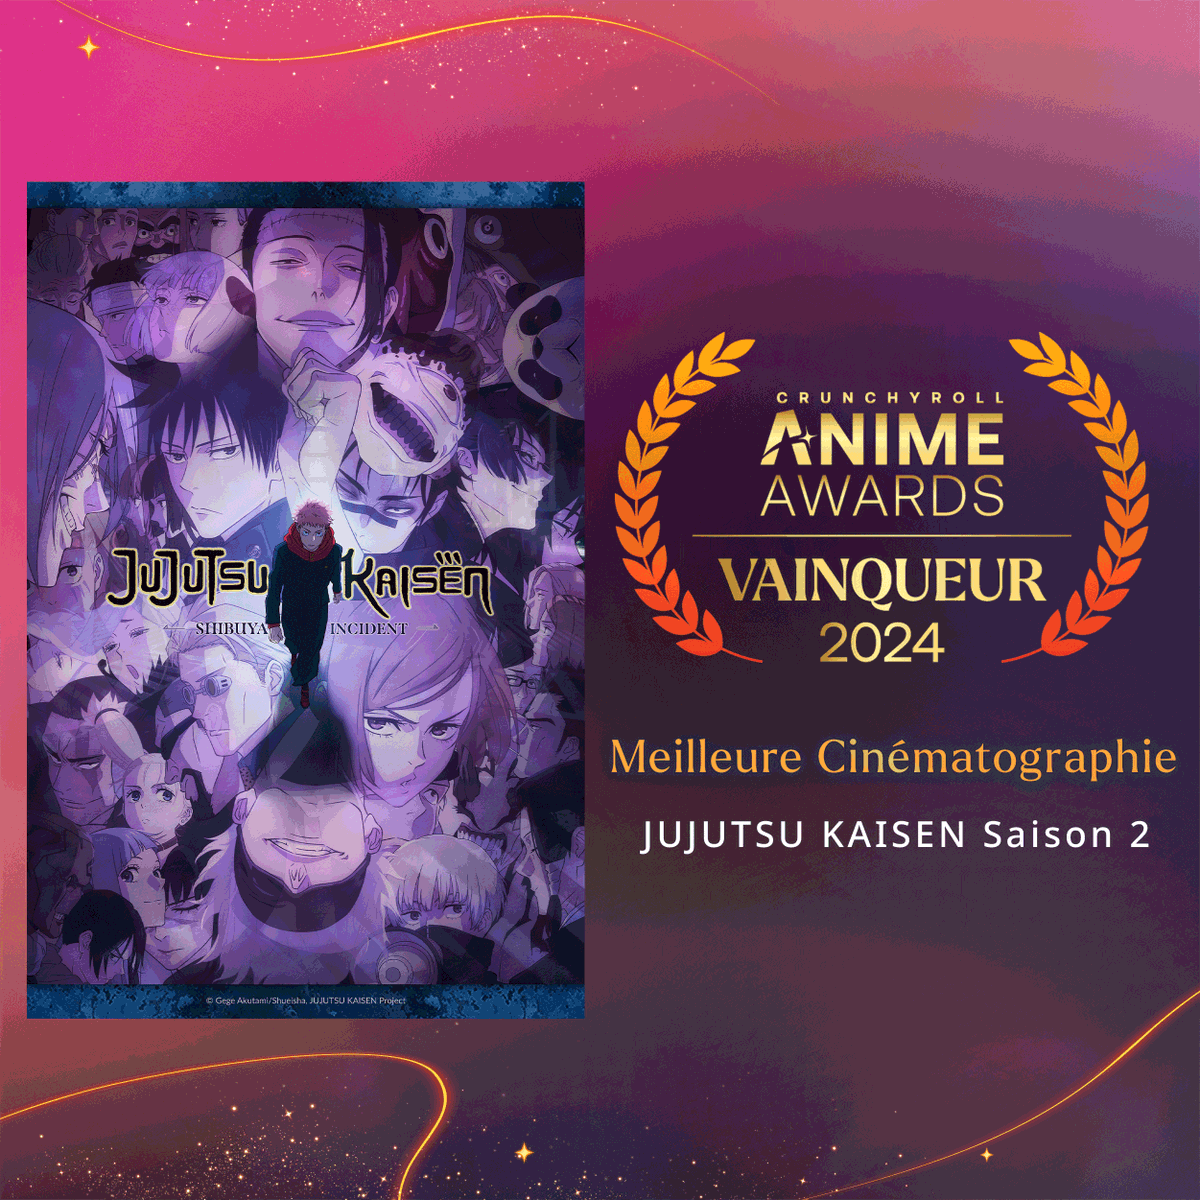 @SpyFamilyAnime @Chainsaw_FR Bravo à MAPPA pour les travaux. 👏 Jujutsu Kaisen S2 repart avec l'award de la Meilleure Cinématographie ! #AnimeAwards